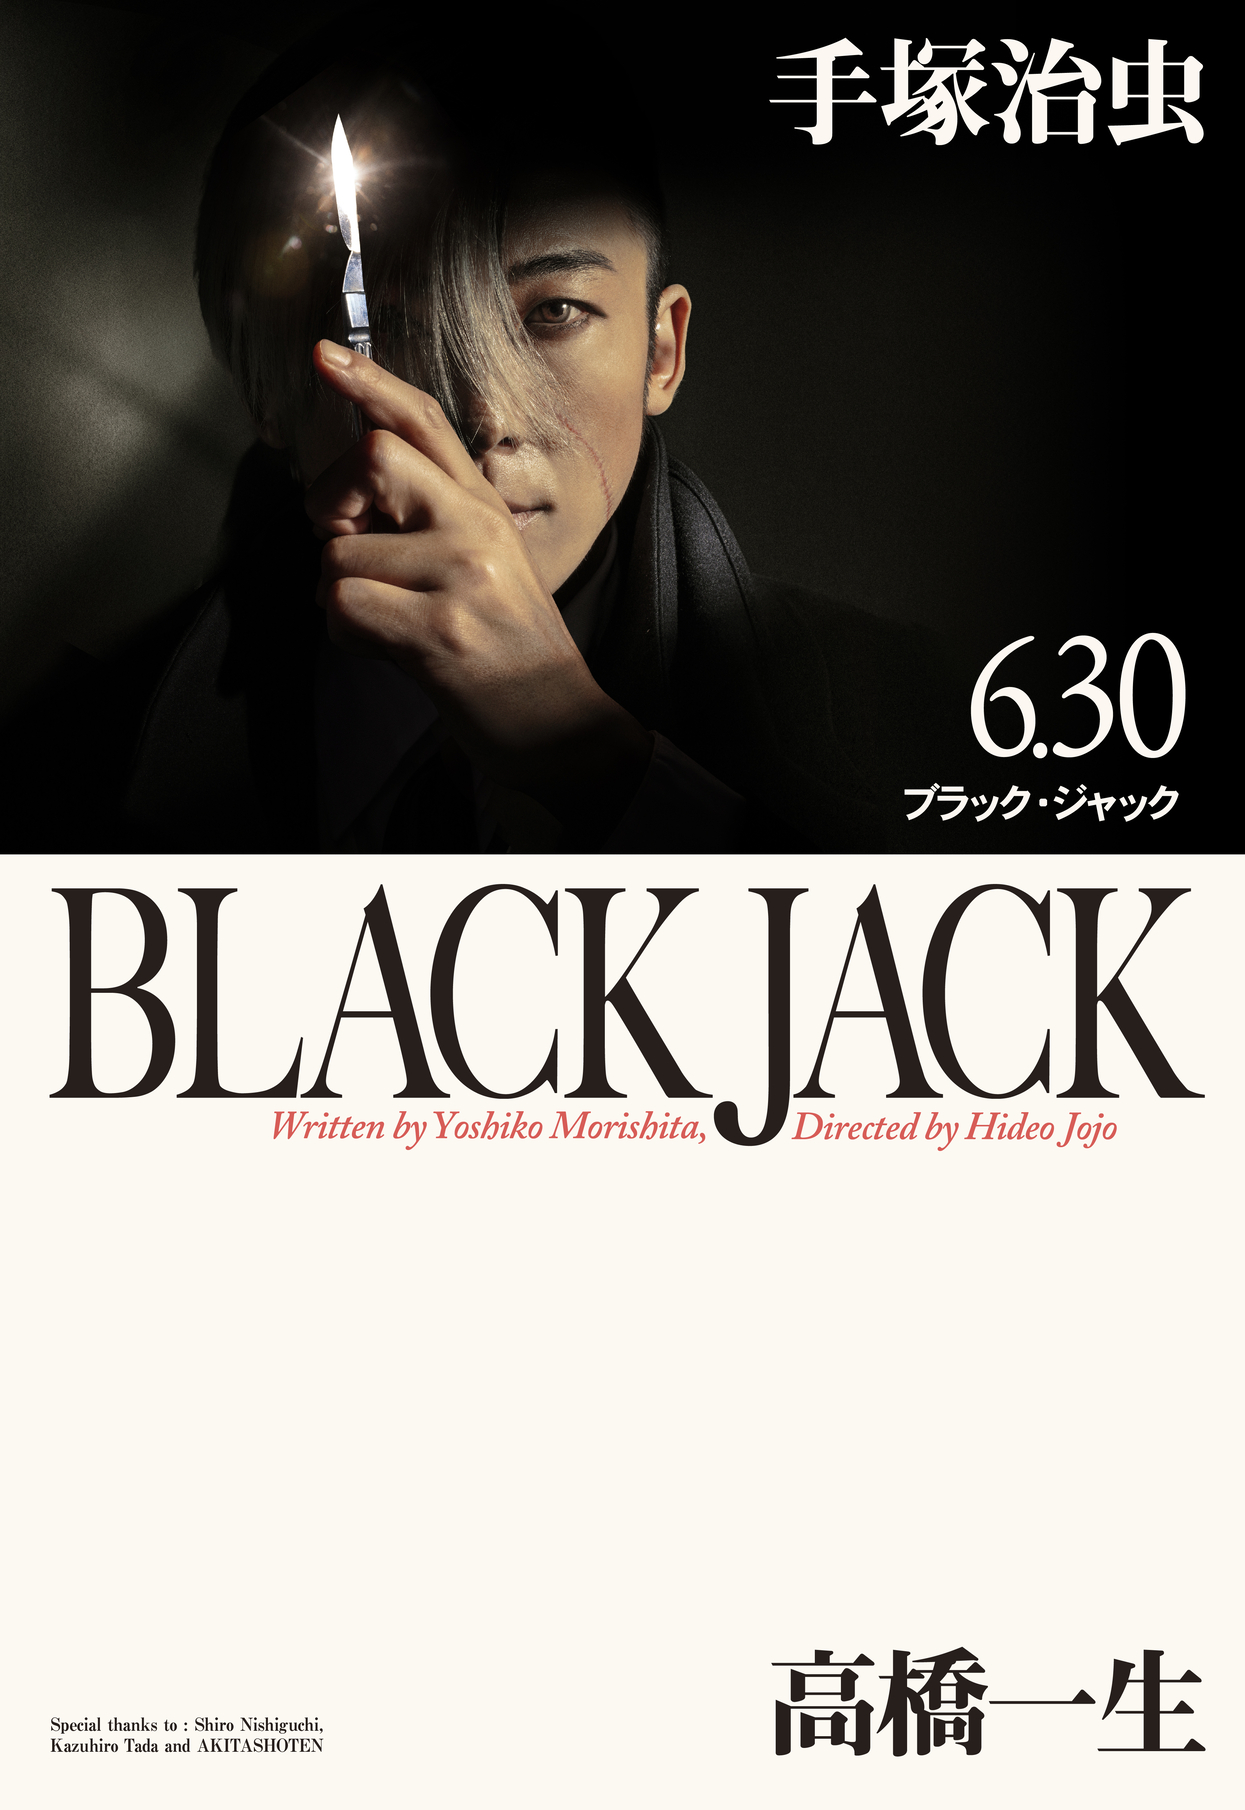 高橋一生主演「ブラック・ジャック」メインビジュアル公開 原作漫画文庫版のオマージュ